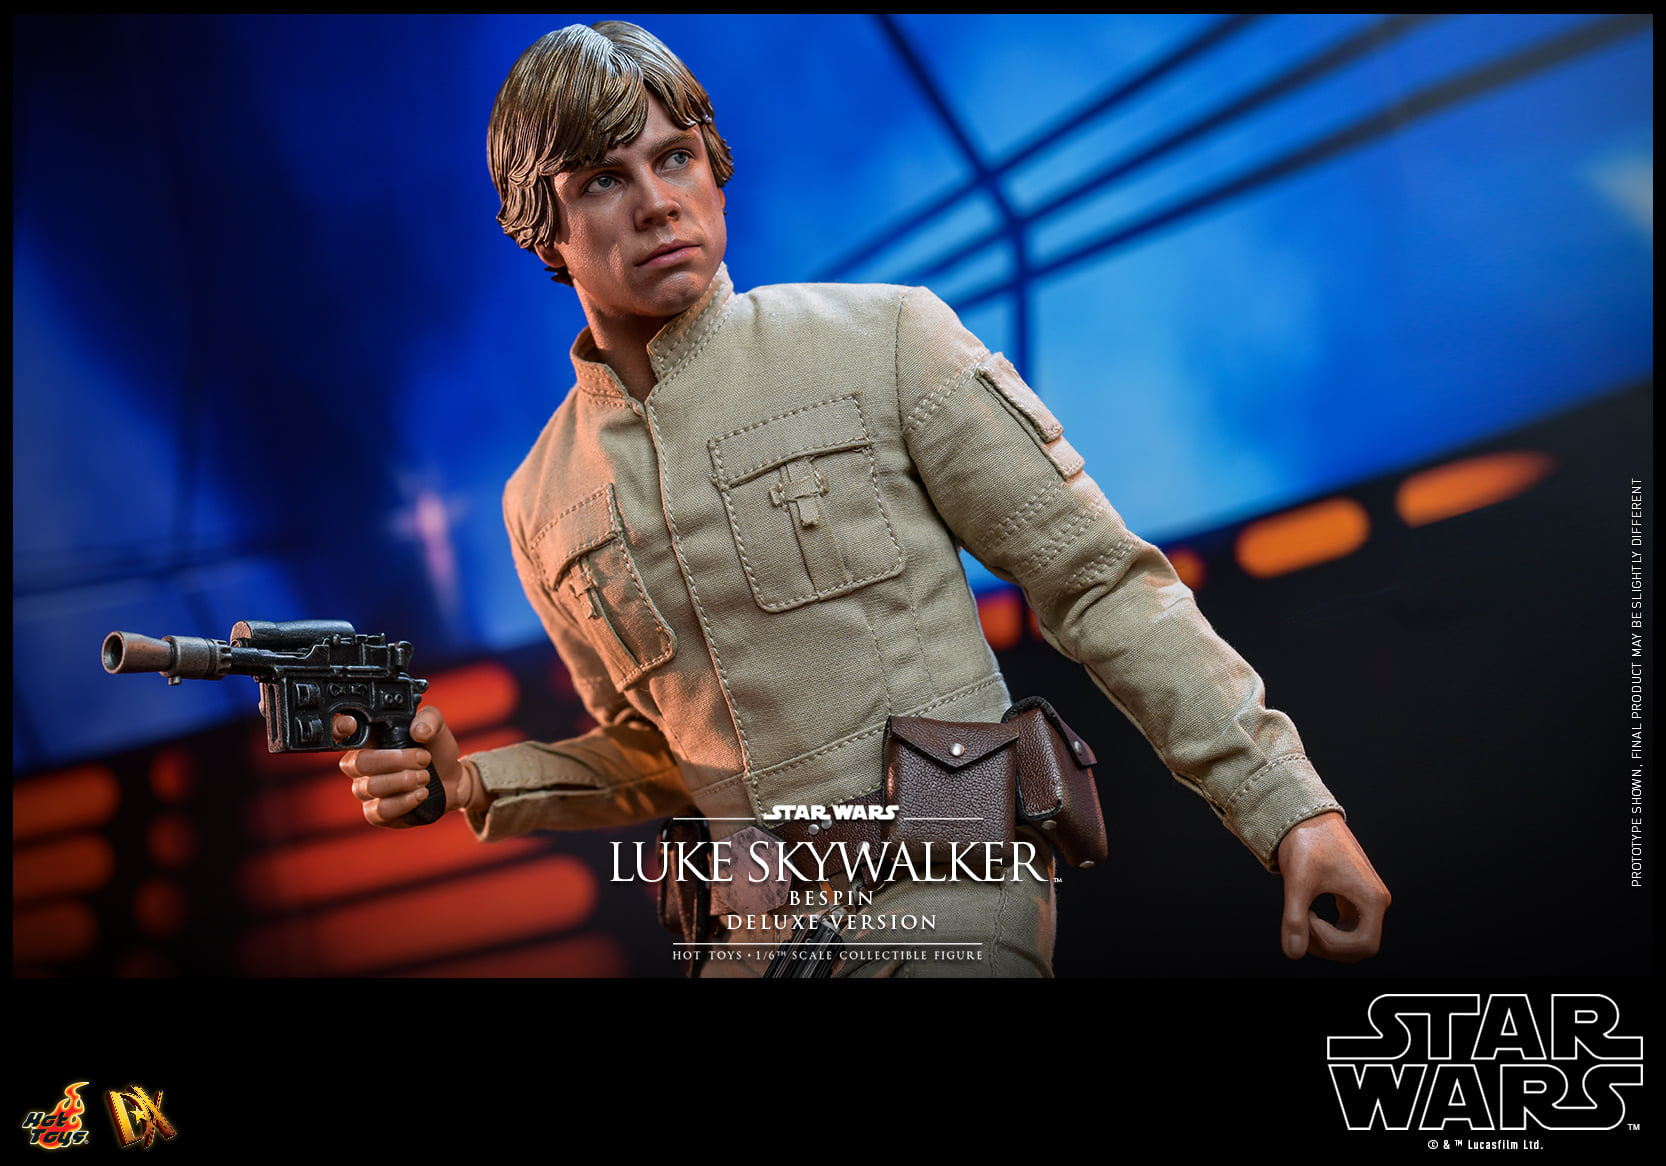 Hot Toys - DX25 - Star Wars: The Empire Strikes Back - Luke Skywalker (Bespin) (Deluxe Ver.) - Marvelous Toys